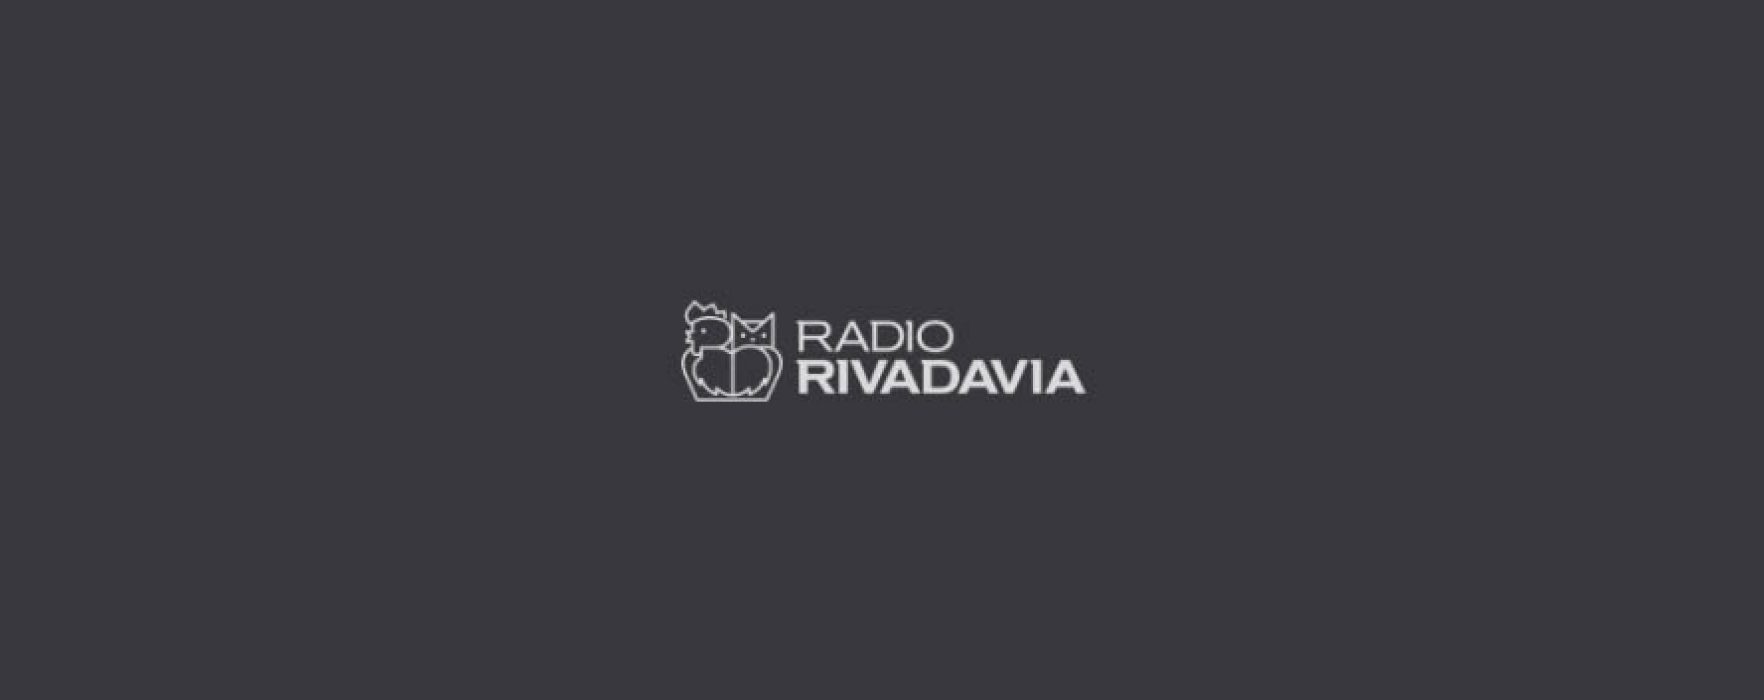 Los síndicos de la quiebra de Radio Rivadavia, denunciados en Comodoro Py